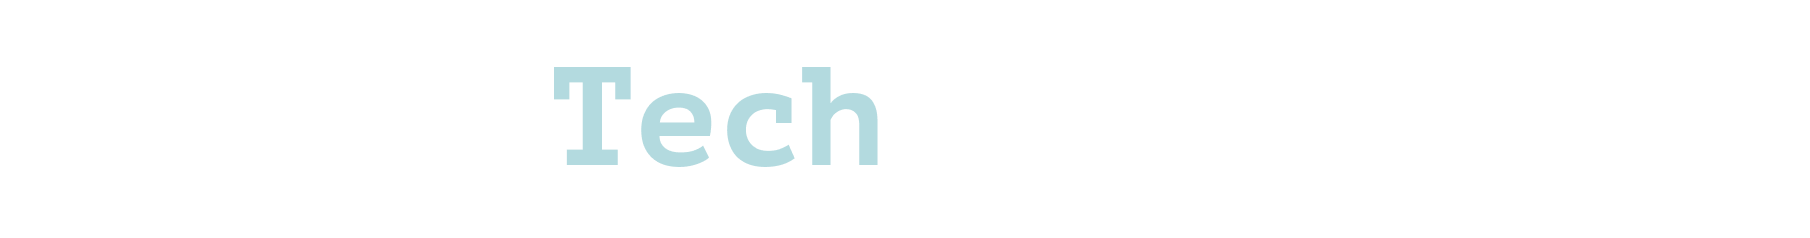 La Tech Connection Logo